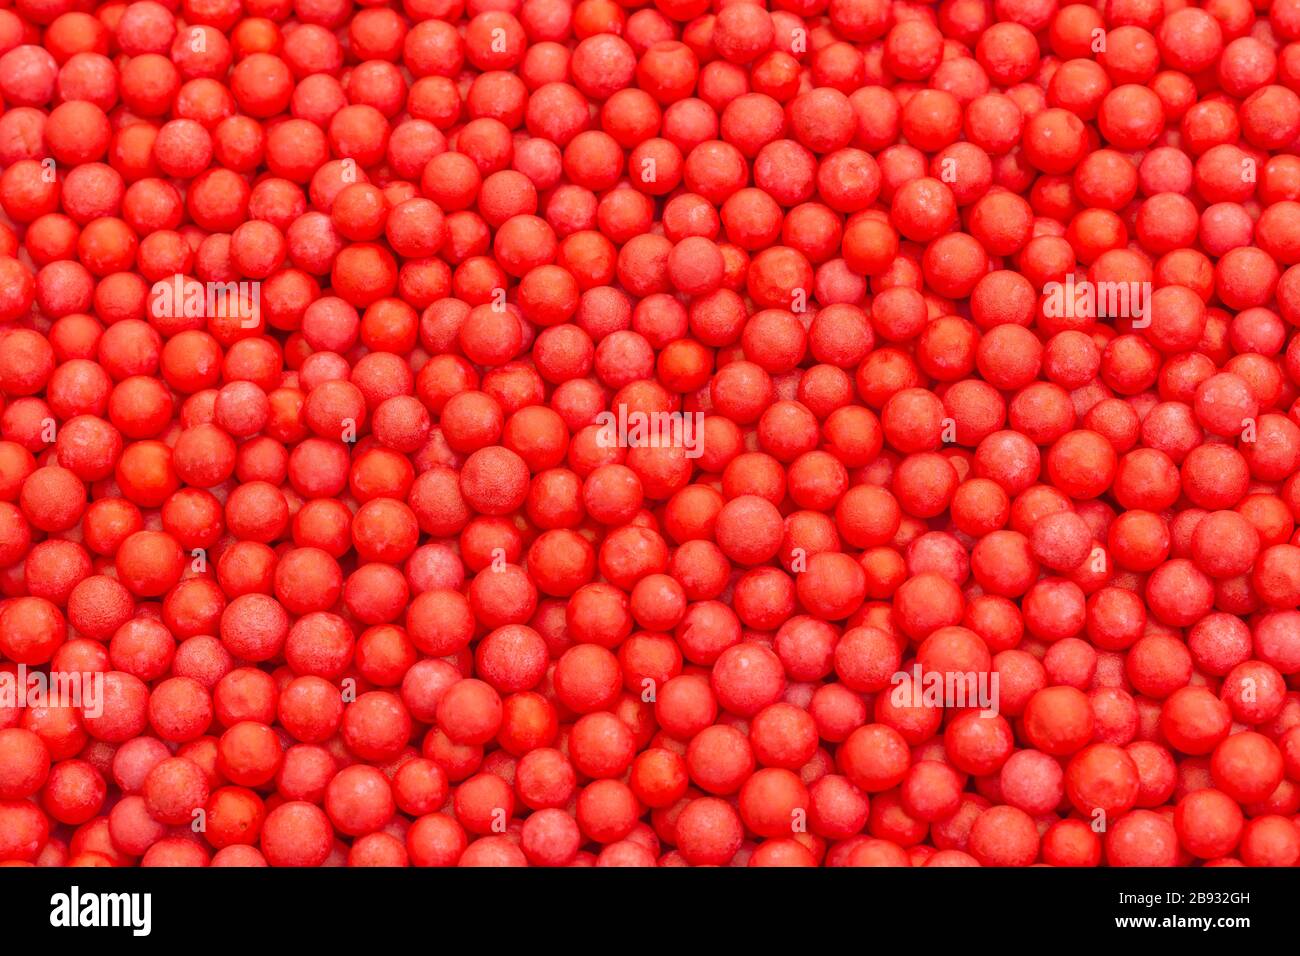 Farbige kleine rote Polystyrolkugeln. Konzept für Covid-19 Selbstisolation, Krankheitsträger, infizierte Person, isoliert, in der Menge verloren, abstrakt. Stockfoto